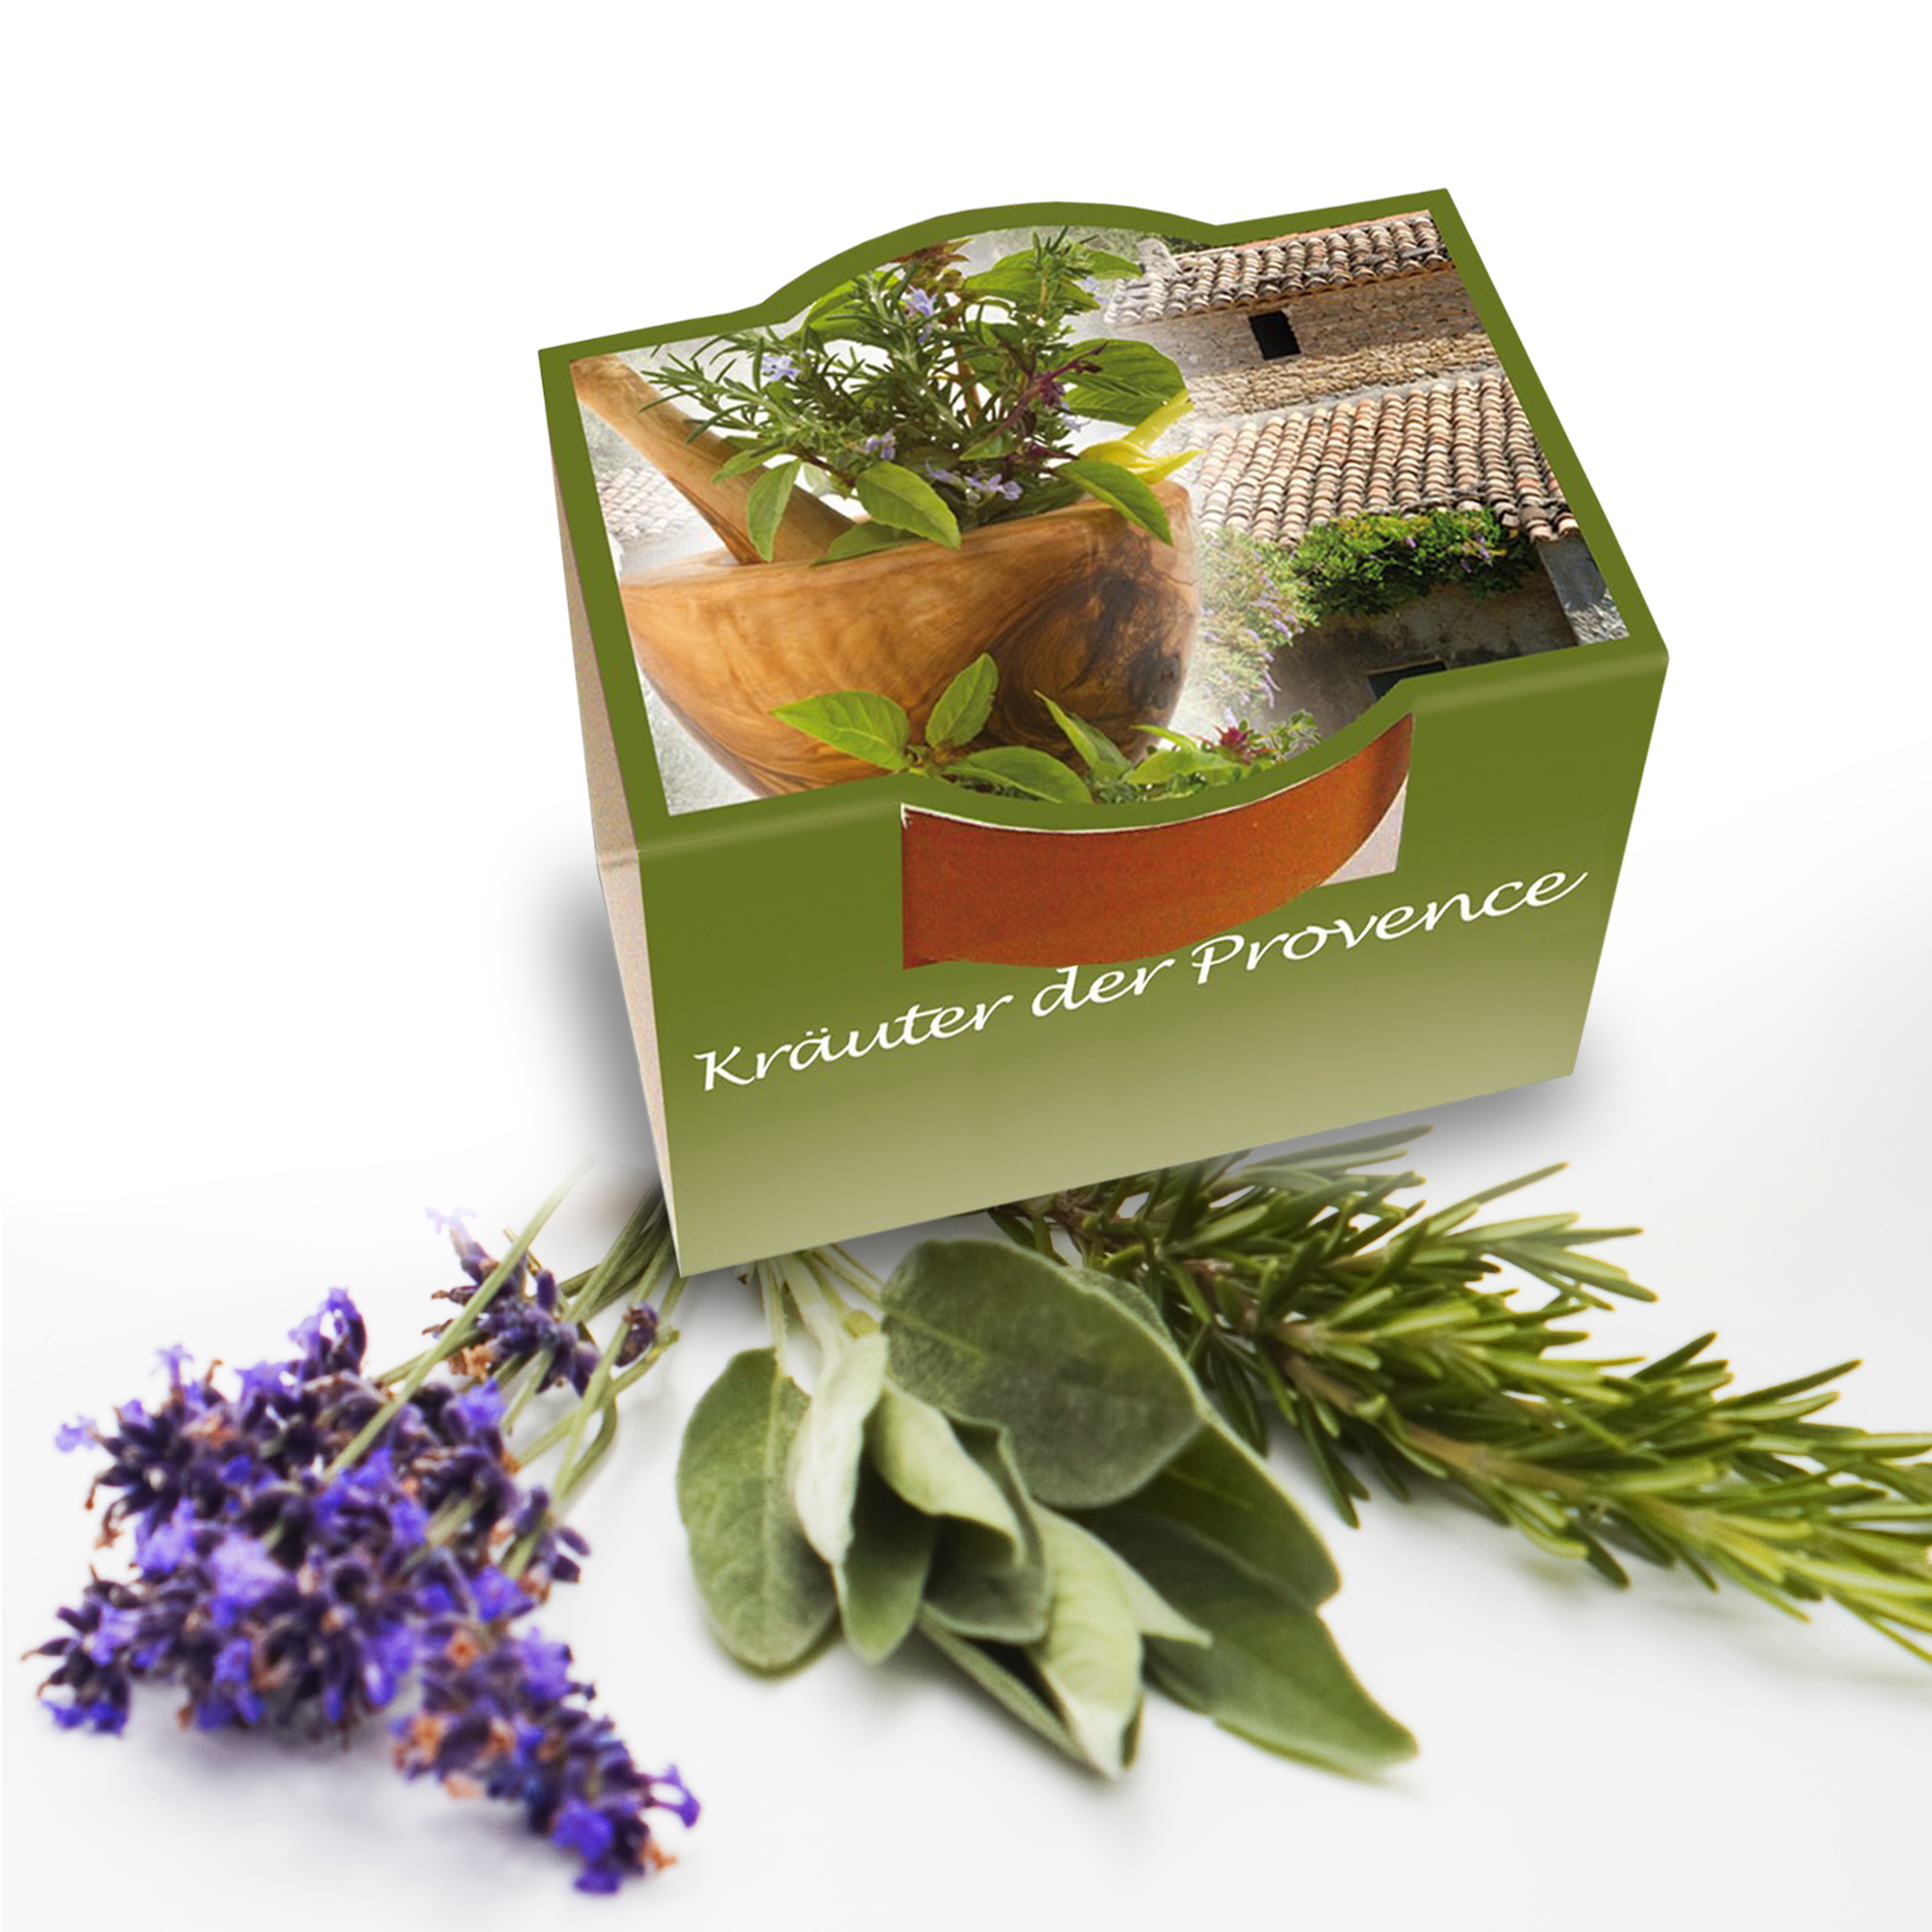 10er Blumenset zum Selberpflanzen - Kräuter der Provence 3790 - 3